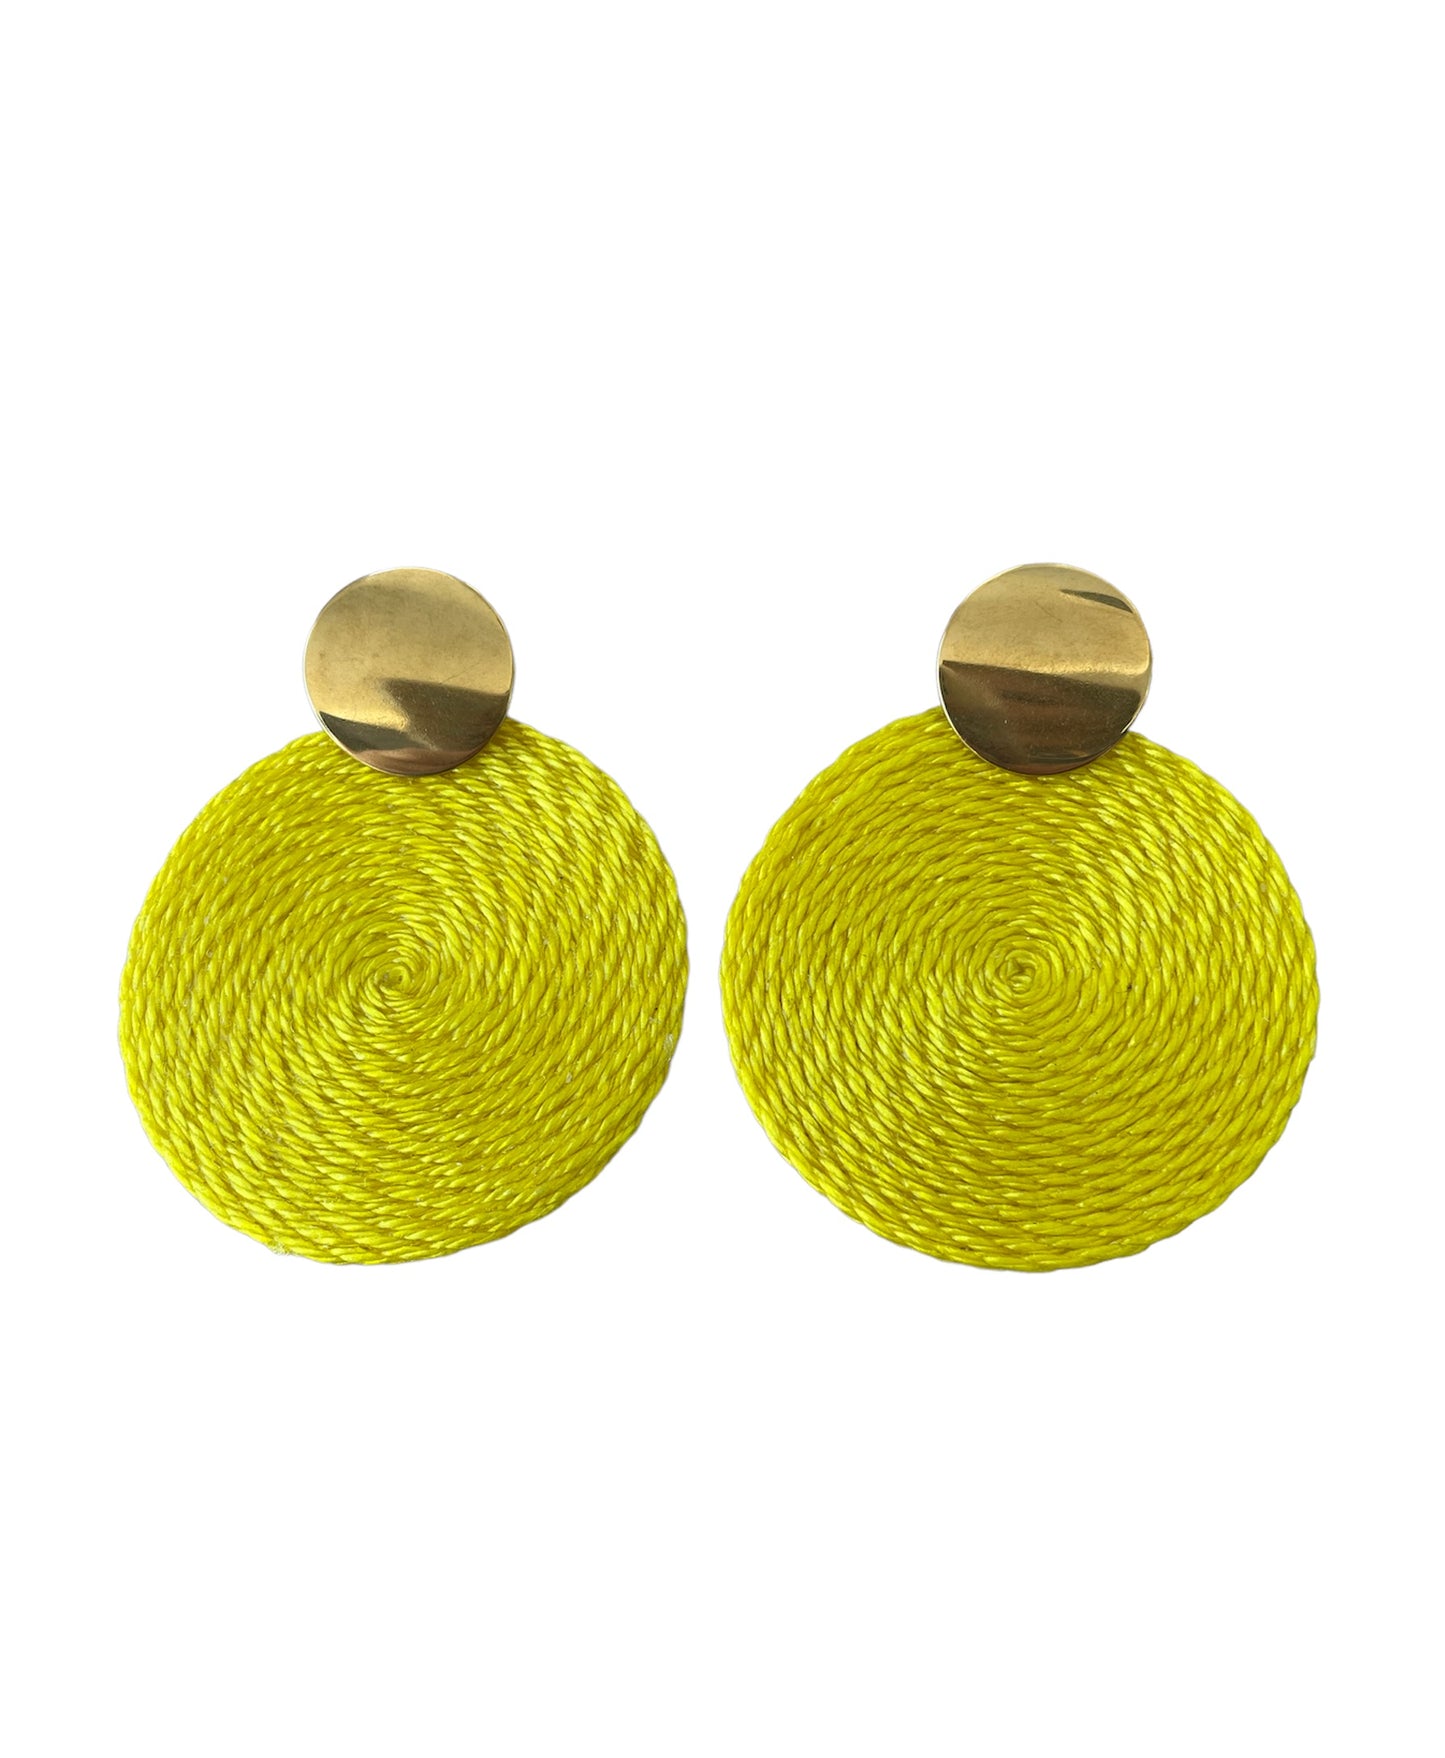 Rosario earrings